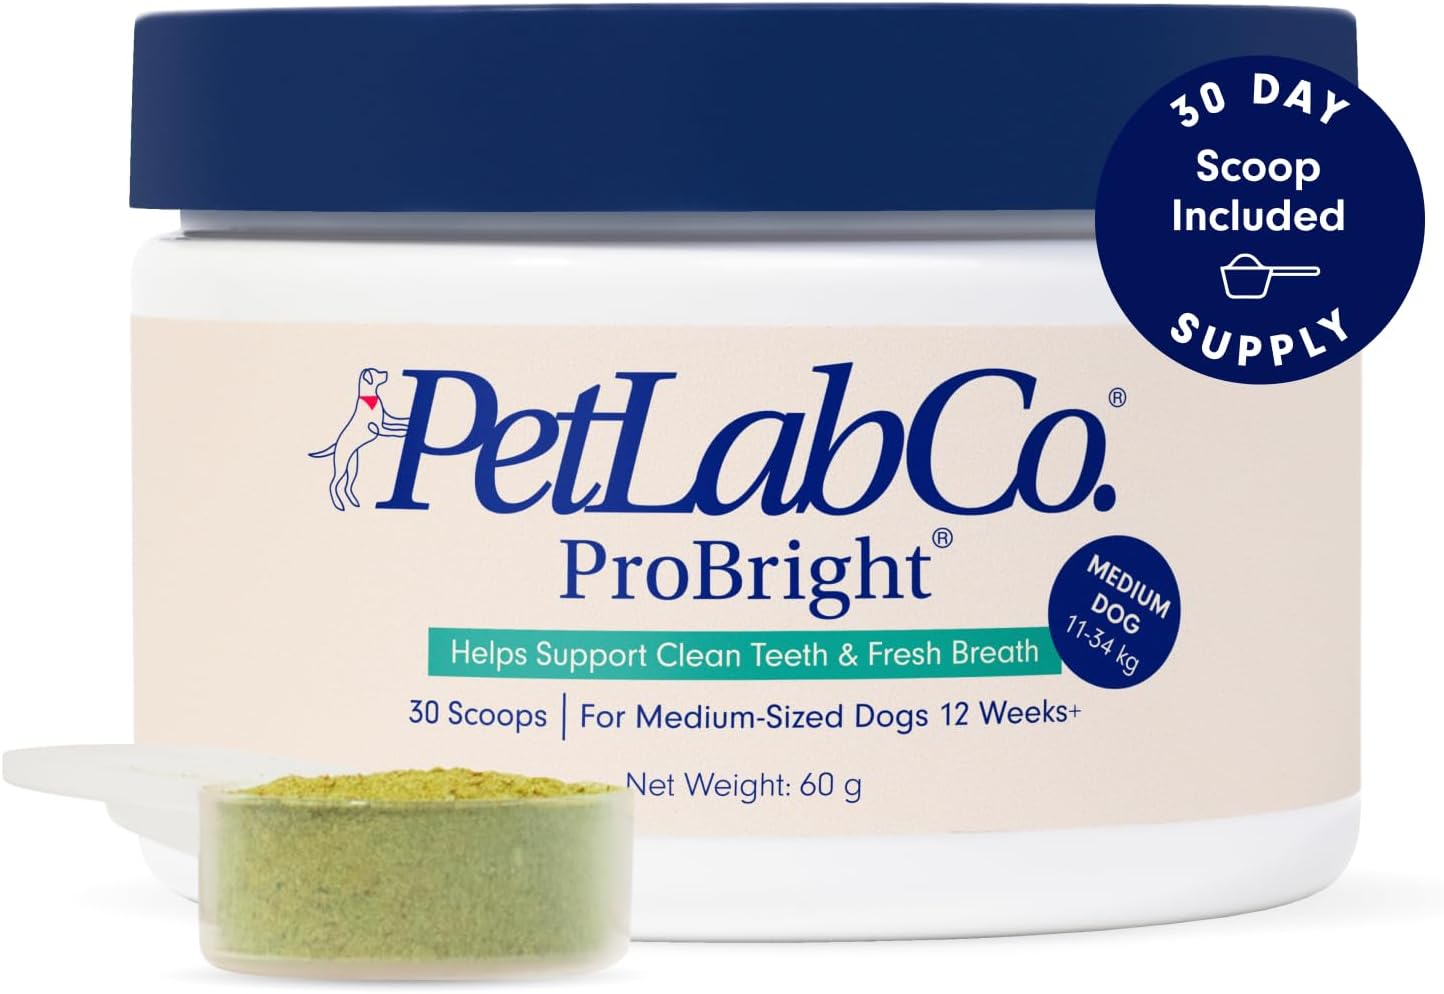 PetLab Co. ProBright® Dental Powder - Dog Breath Freshener - Teeth Cleaning Made Easy – Targets Tartar & Bad Breath - Formulated for Medium Dogs